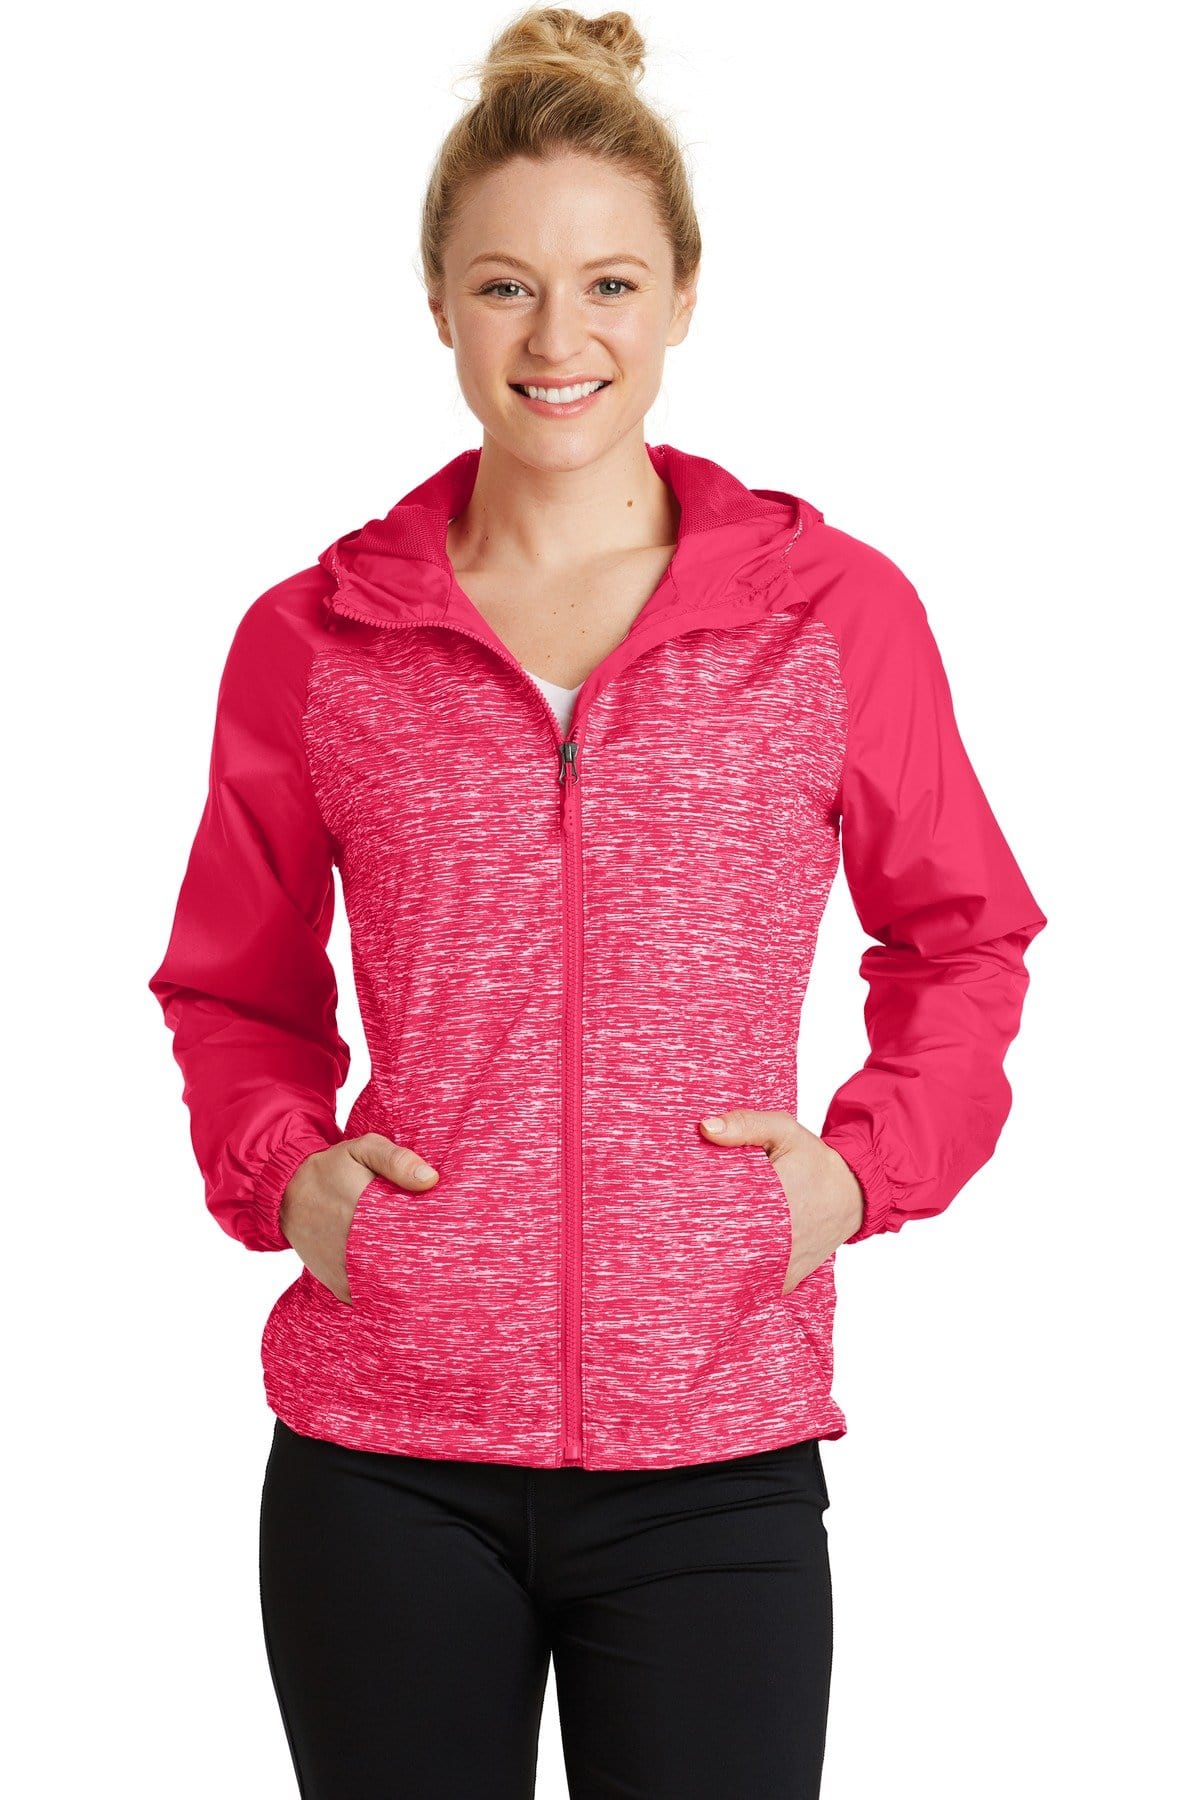 Sport-Tek Heather Raglan Women's Hooded Jacket LST404675